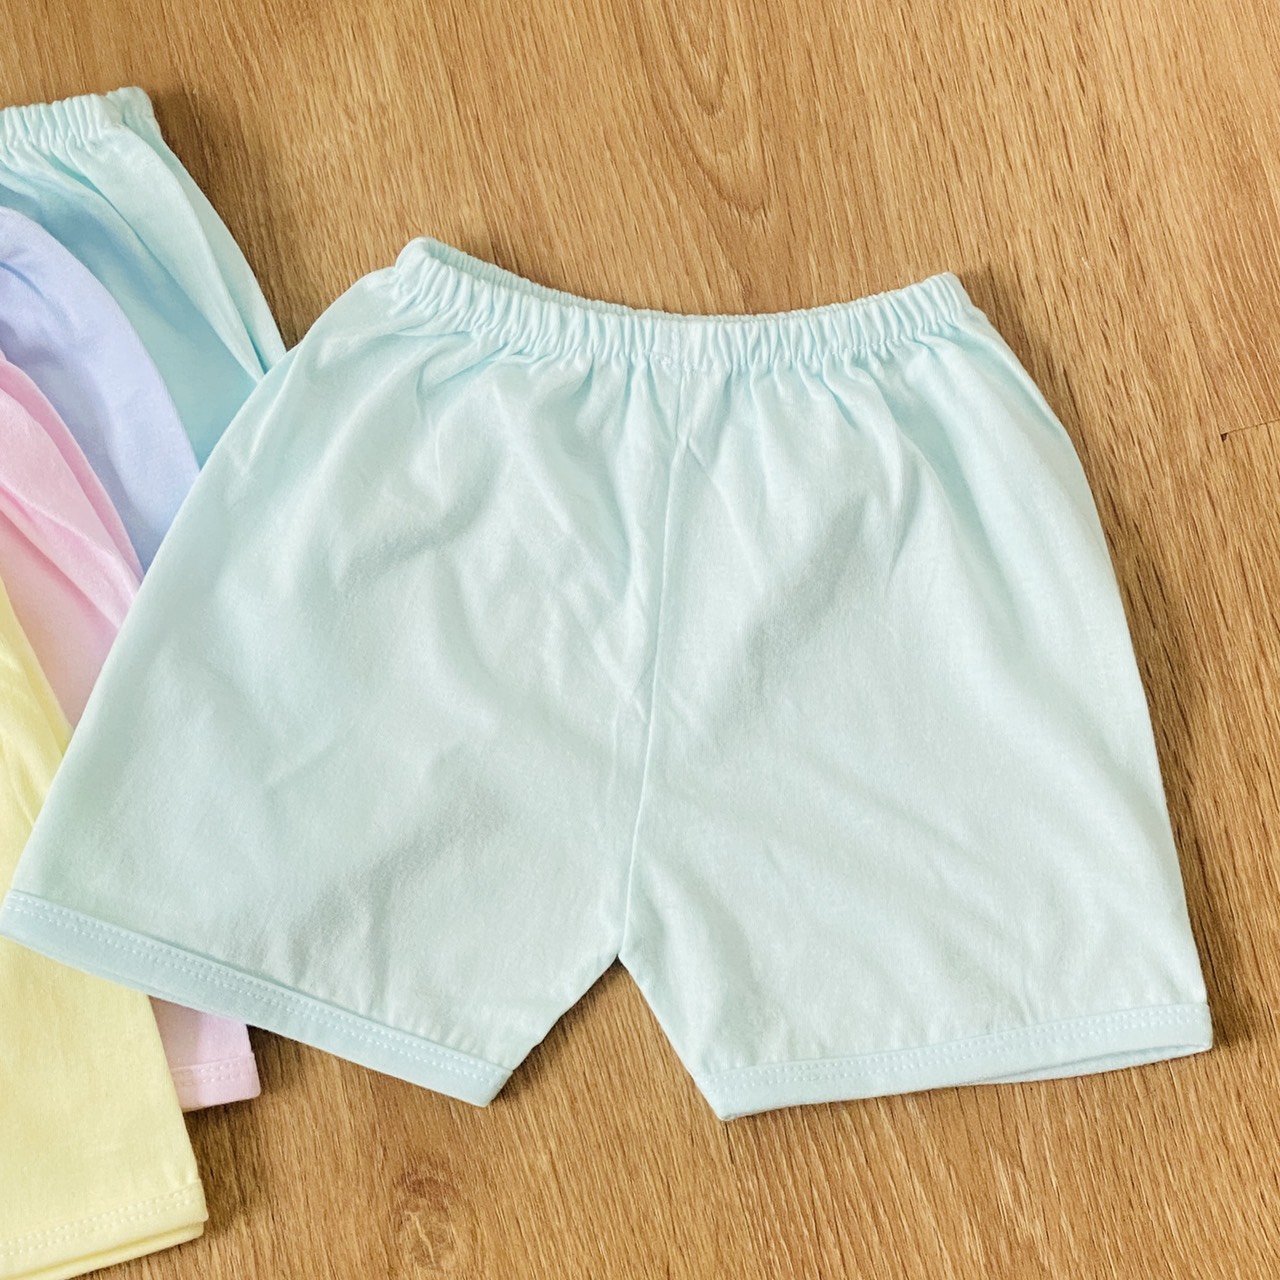 Combo 5 quần đùi sơ sinh JOU cotton 100% màu nhạt cho bé trai, bé gái, quần áo sơ sinh chất vải mềm, mịn, thoáng mát, hàng Việt Nam chất lượng